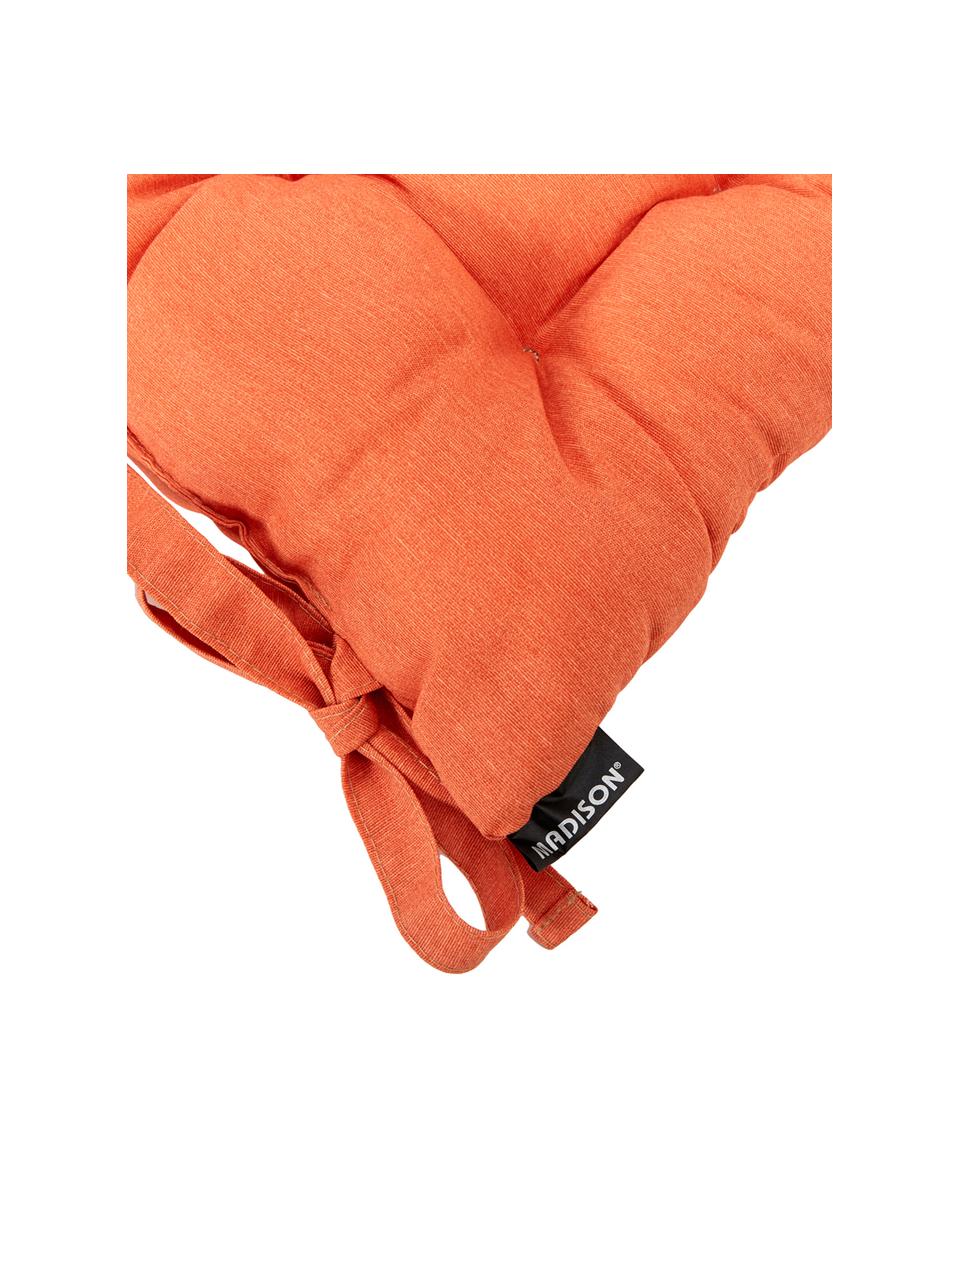 Einfarbiges Sitzkissen Panama in Orange, Bezug: 50% Baumwolle, 45% Polyes, Orange, 45 x 45 cm